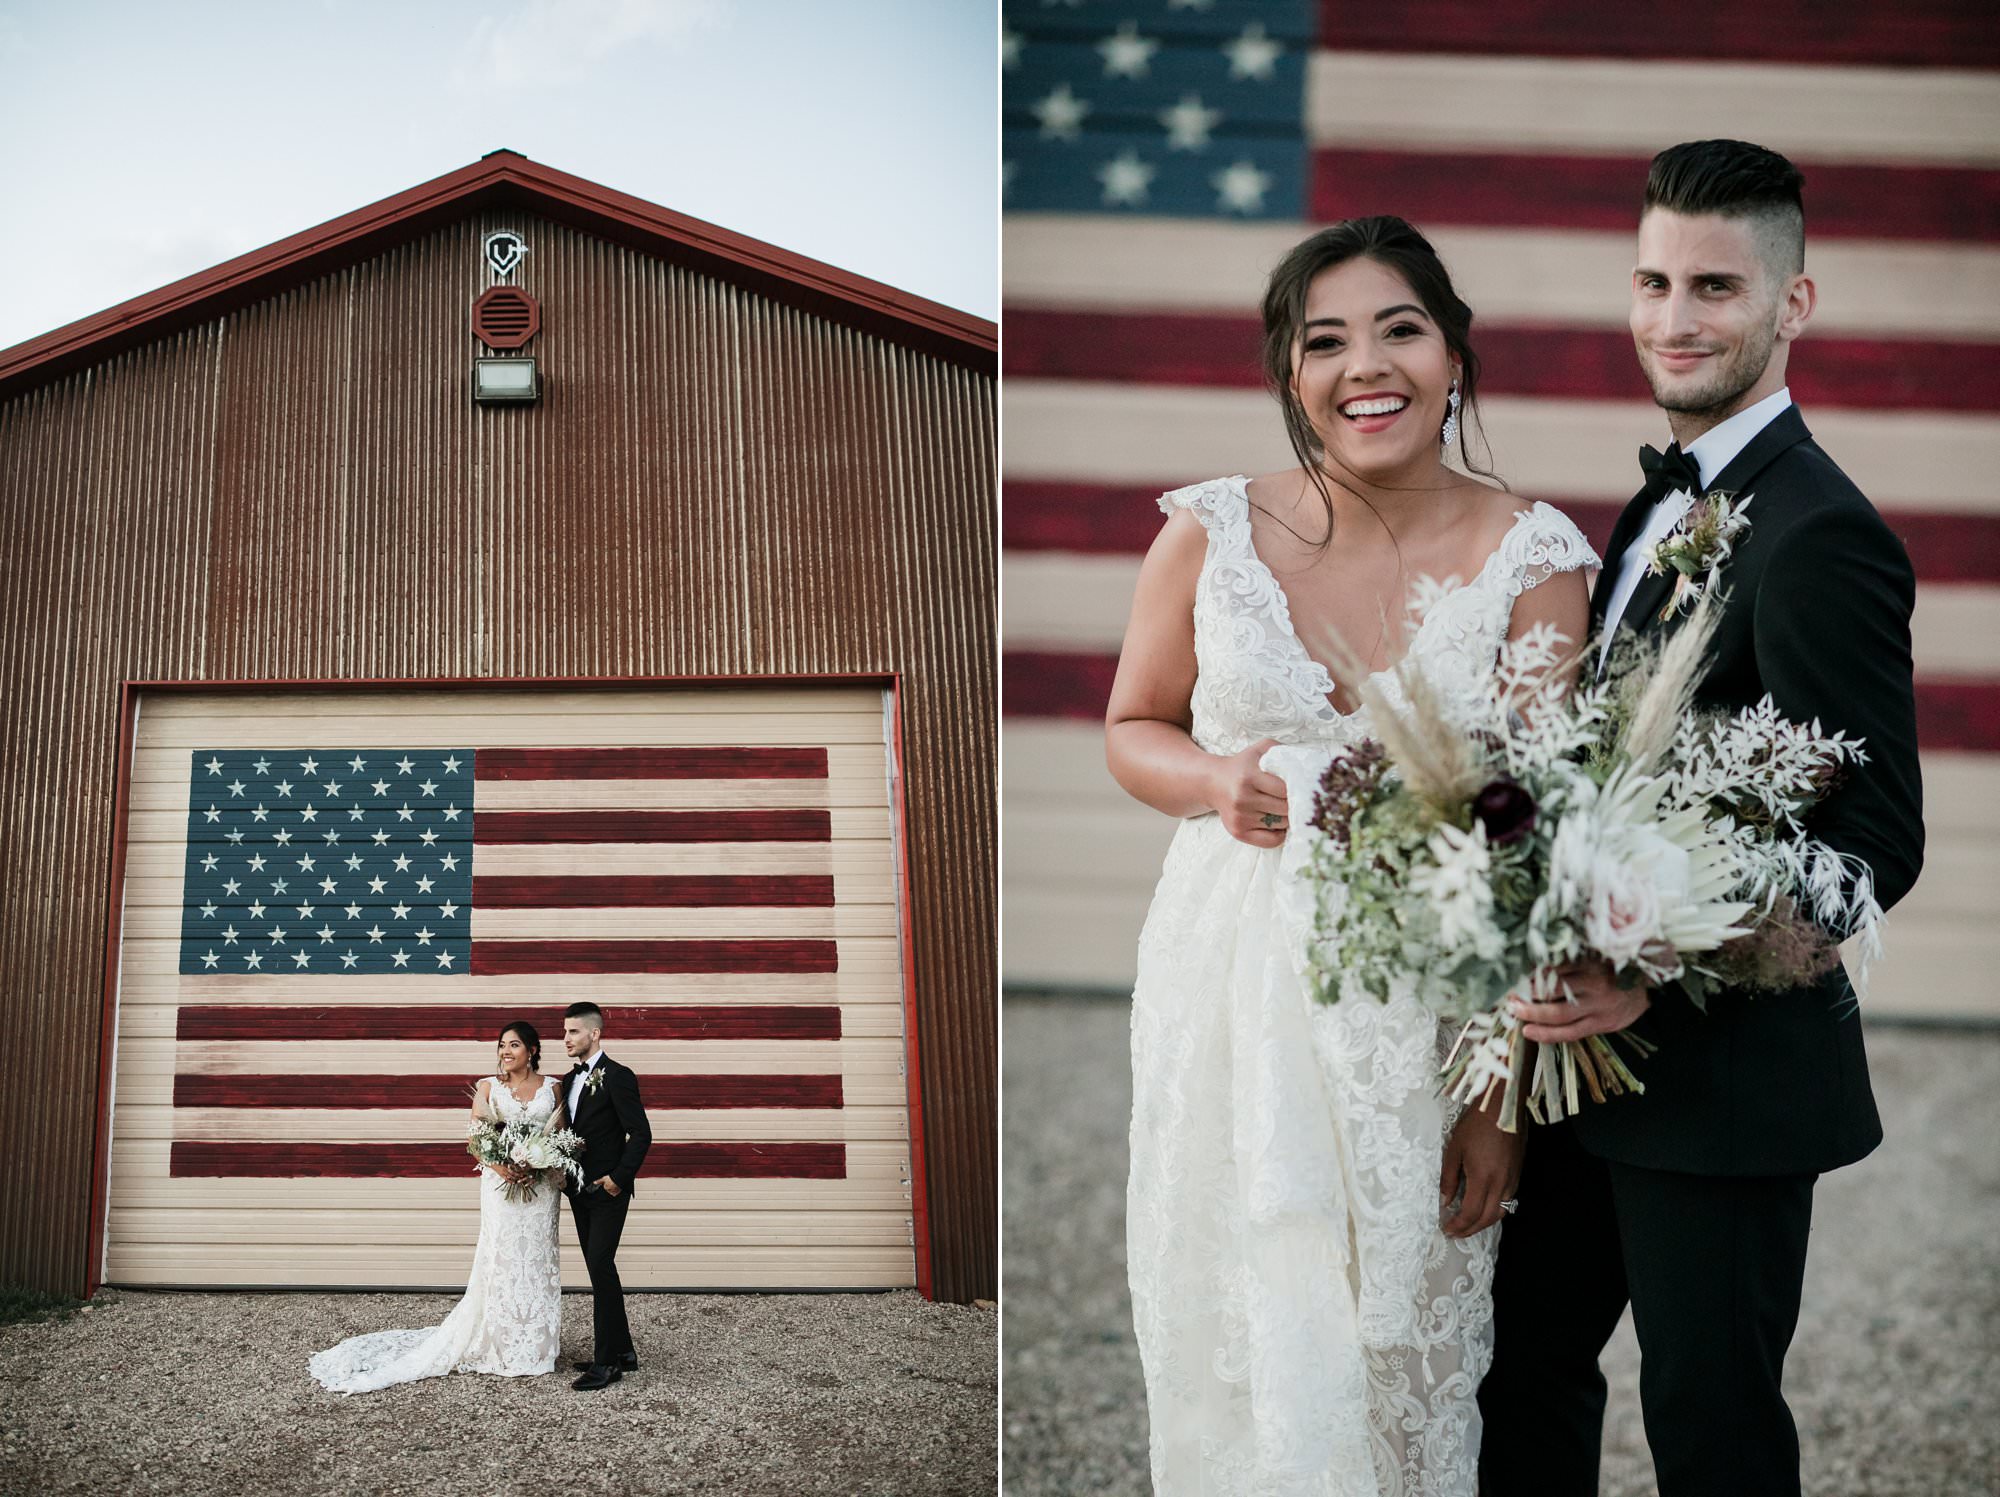 Deerwood ranch bride and groom, flag barn